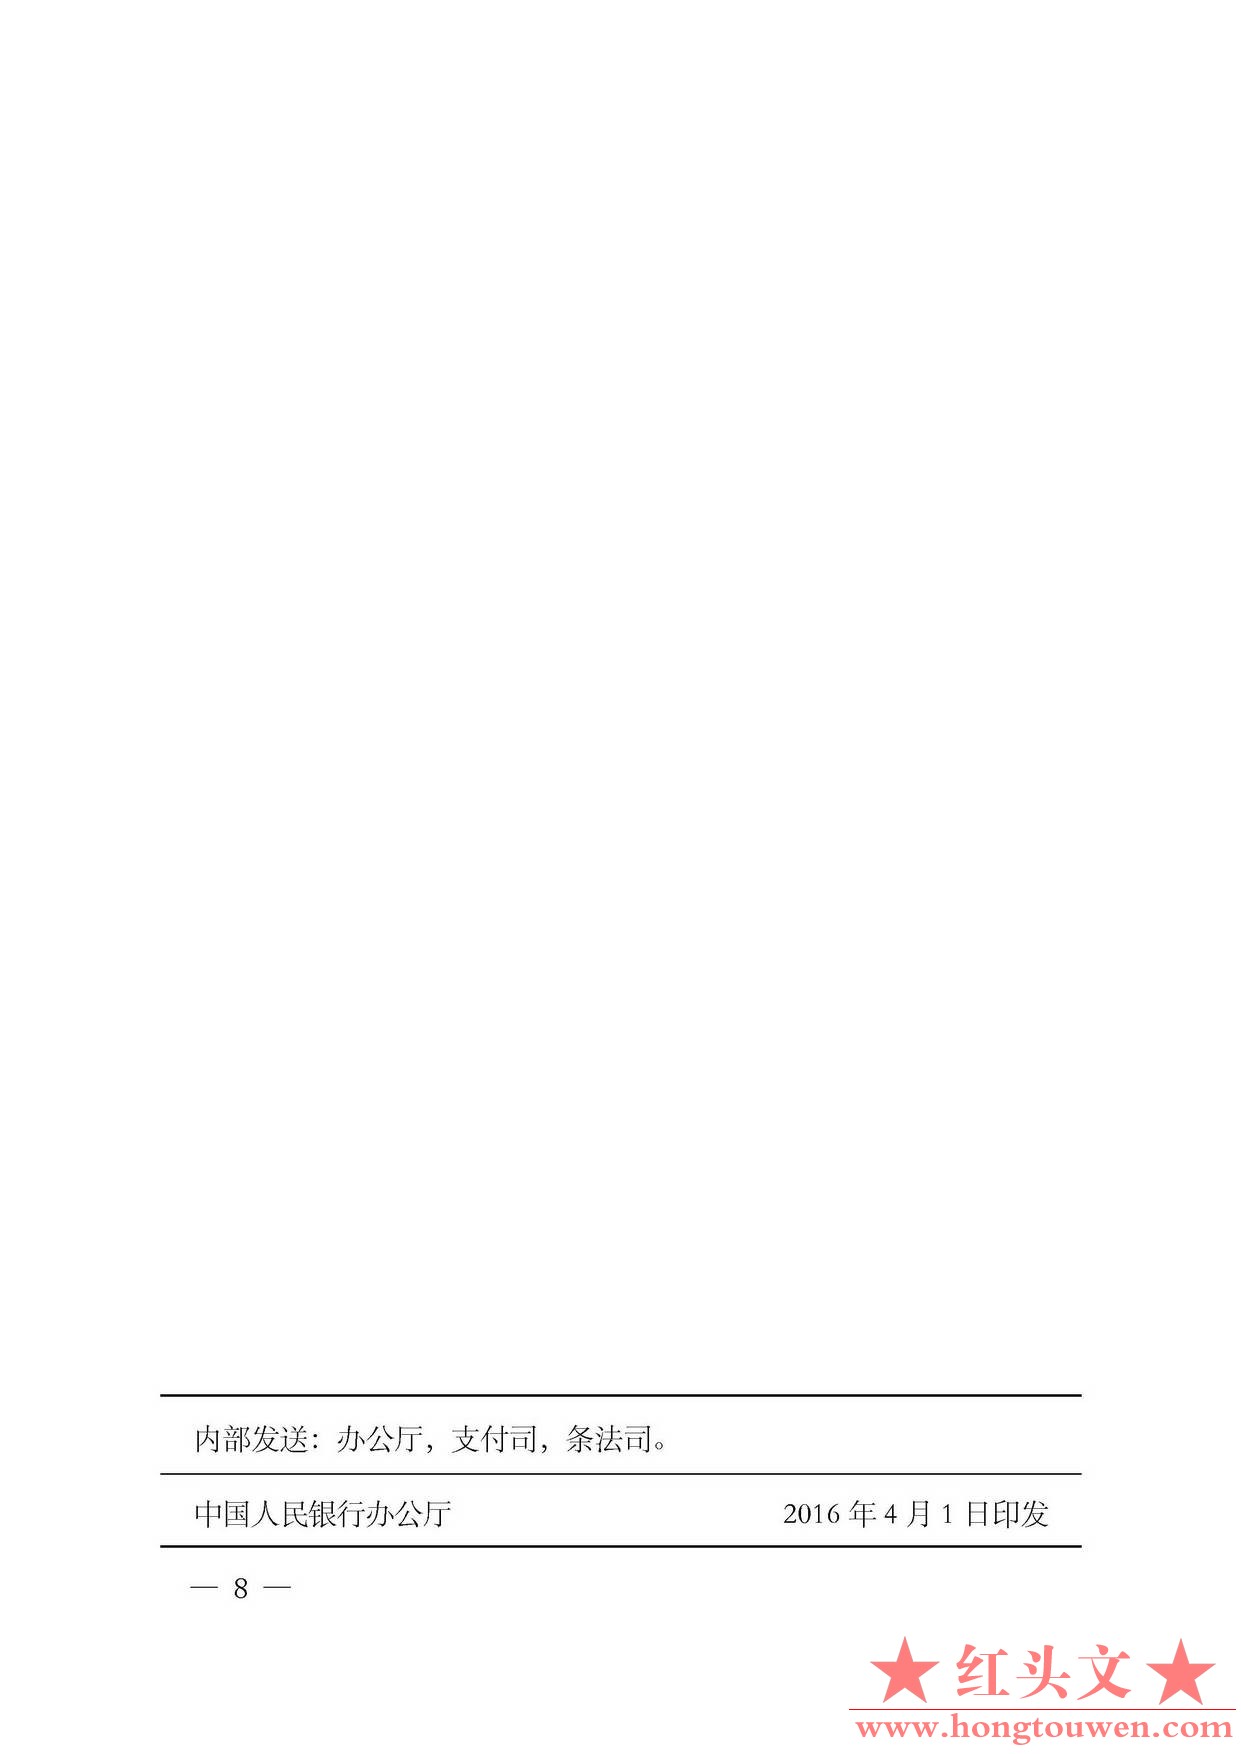 银发[2016]99号-中国人民银行民政部关于规范全国性社会组织开立临时存款账户有关事项.jpg